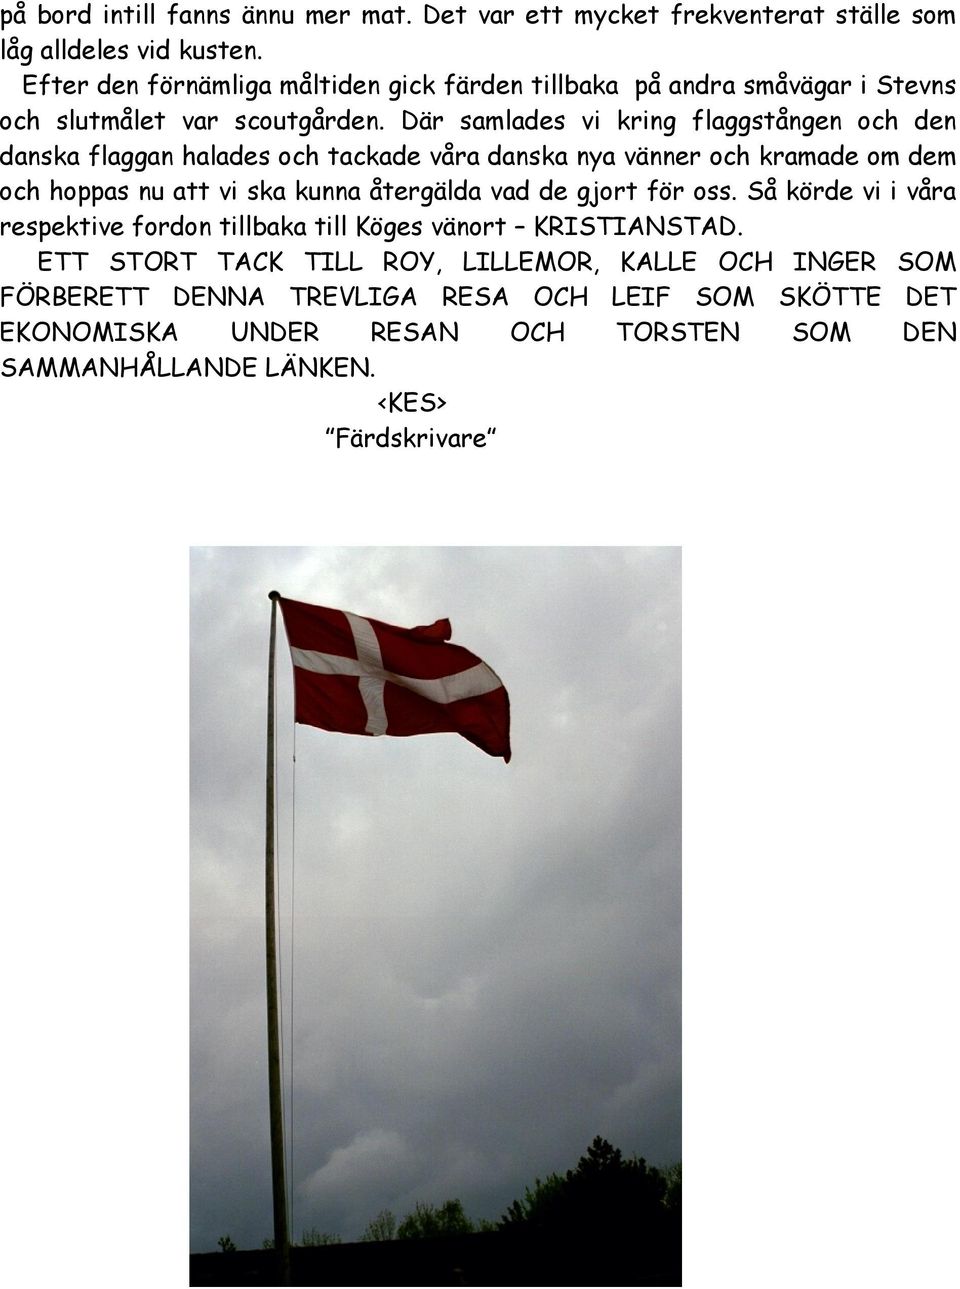 Där samlades vi kring flaggstången och den danska flaggan halades och tackade våra danska nya vänner och kramade om dem och hoppas nu att vi ska kunna återgälda vad